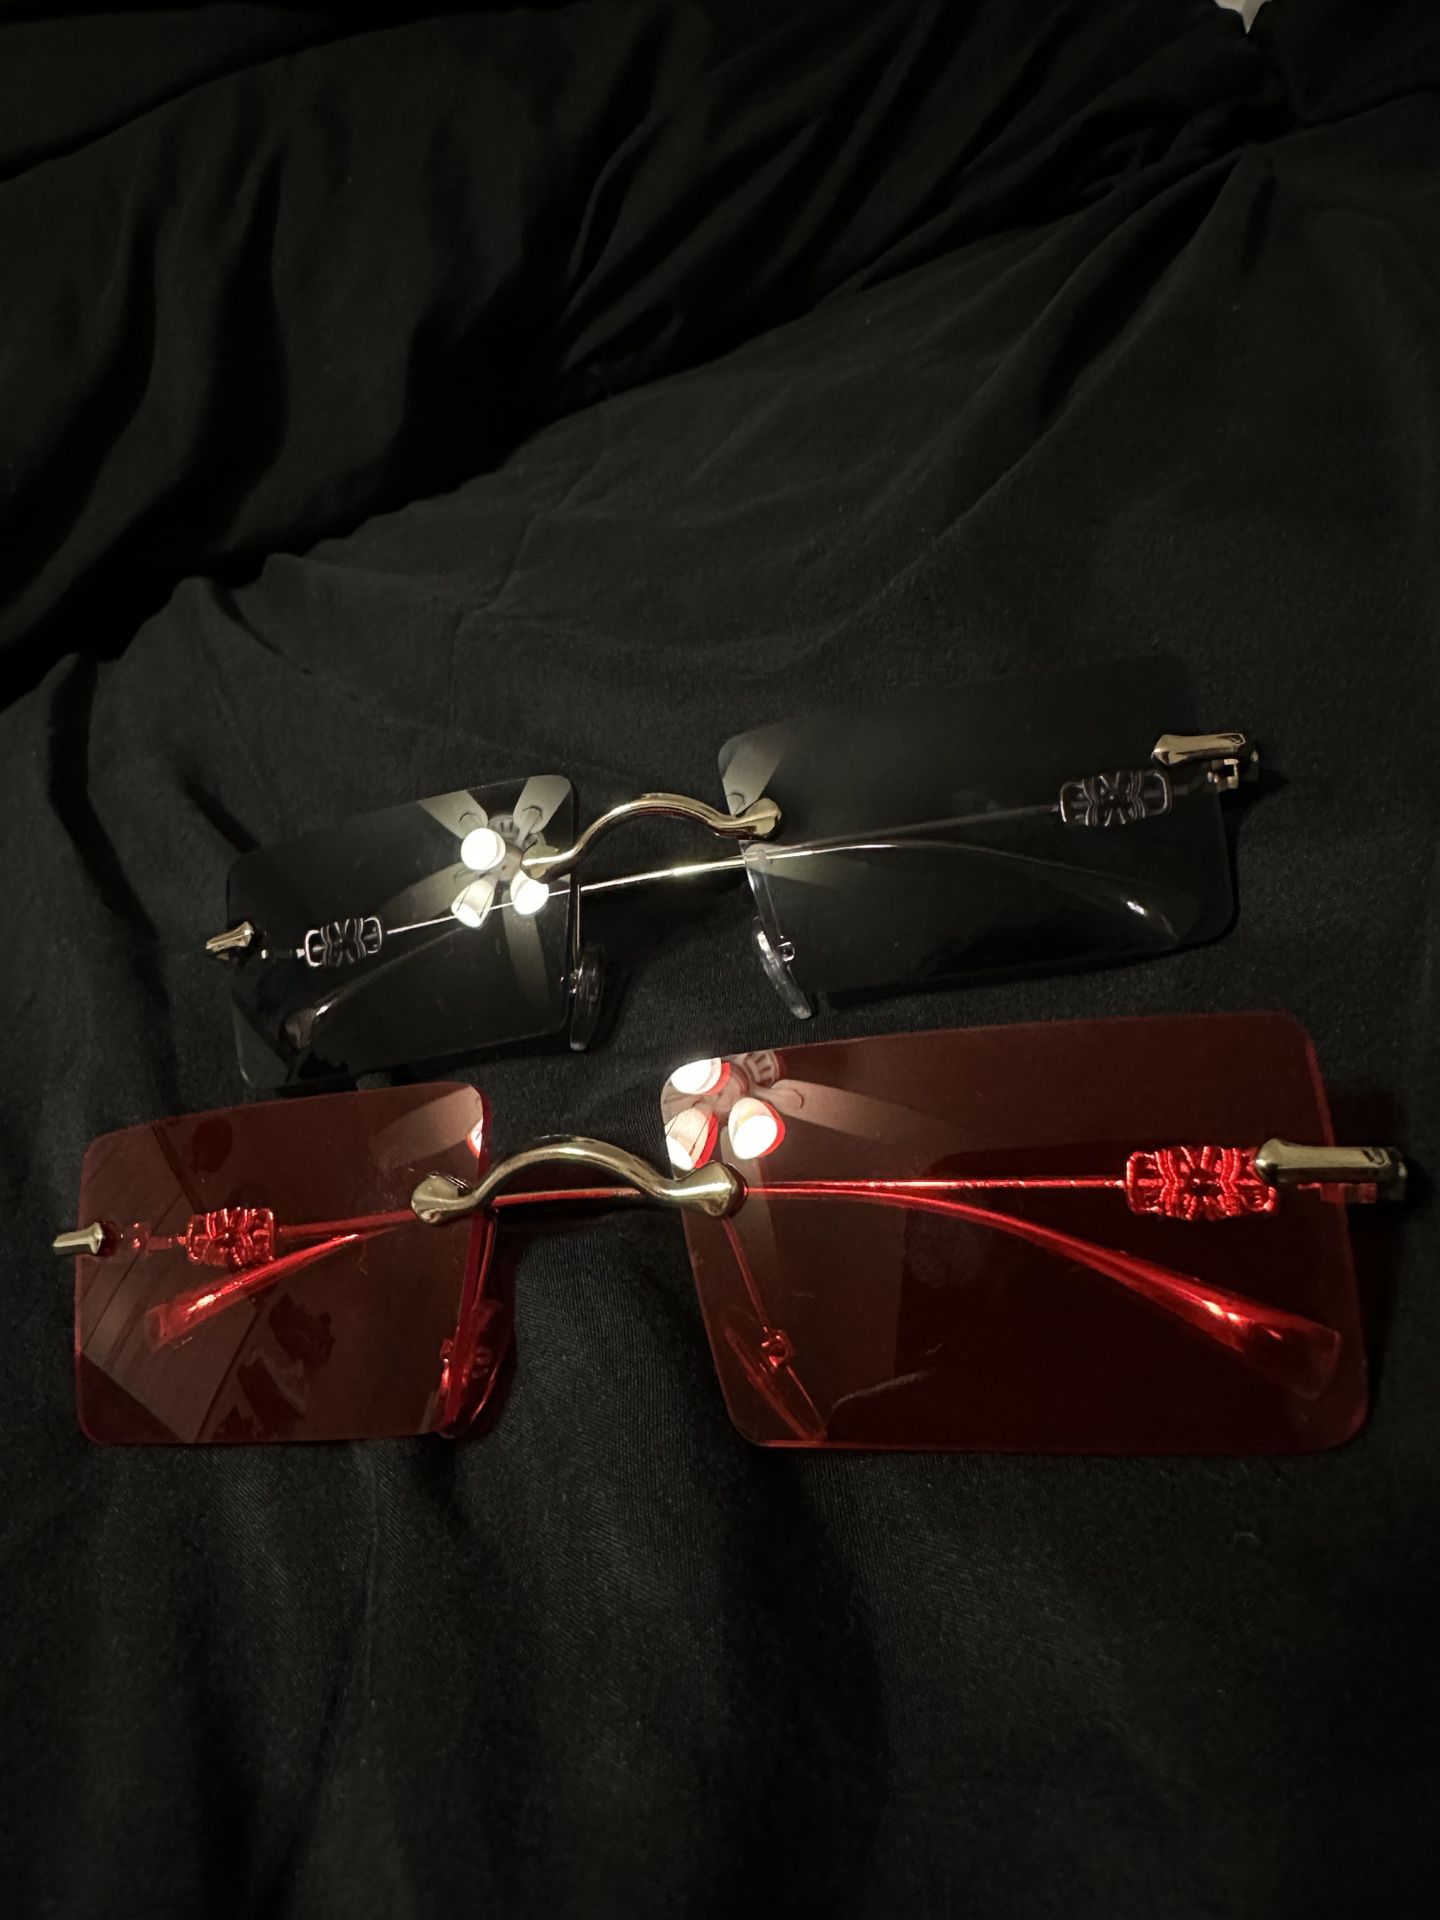 Men’s Gold Sunglasses, Black/Red Lense